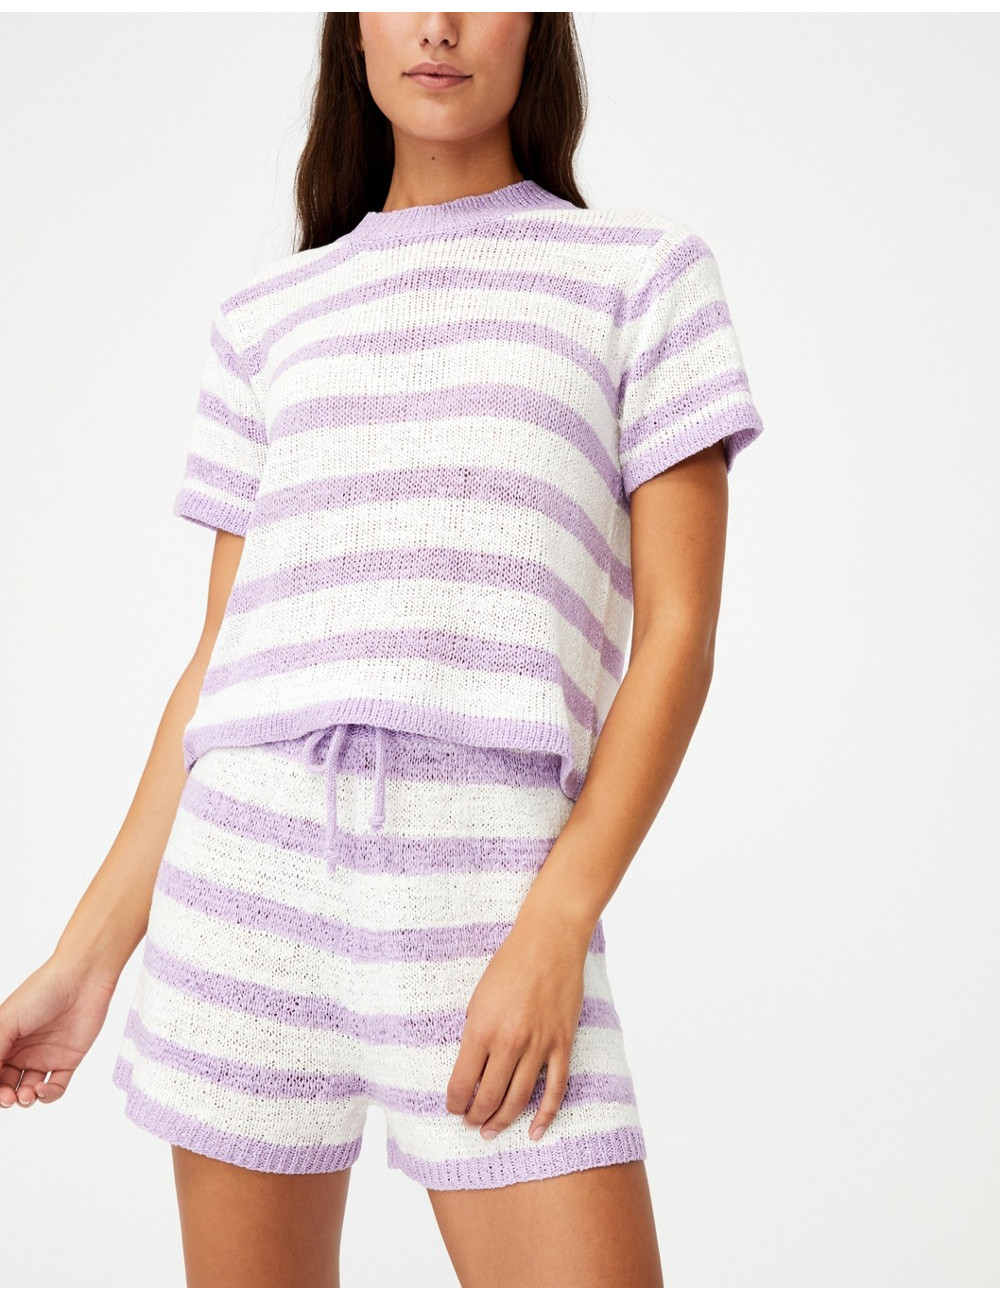 Cotton:On co-ord pyjama...